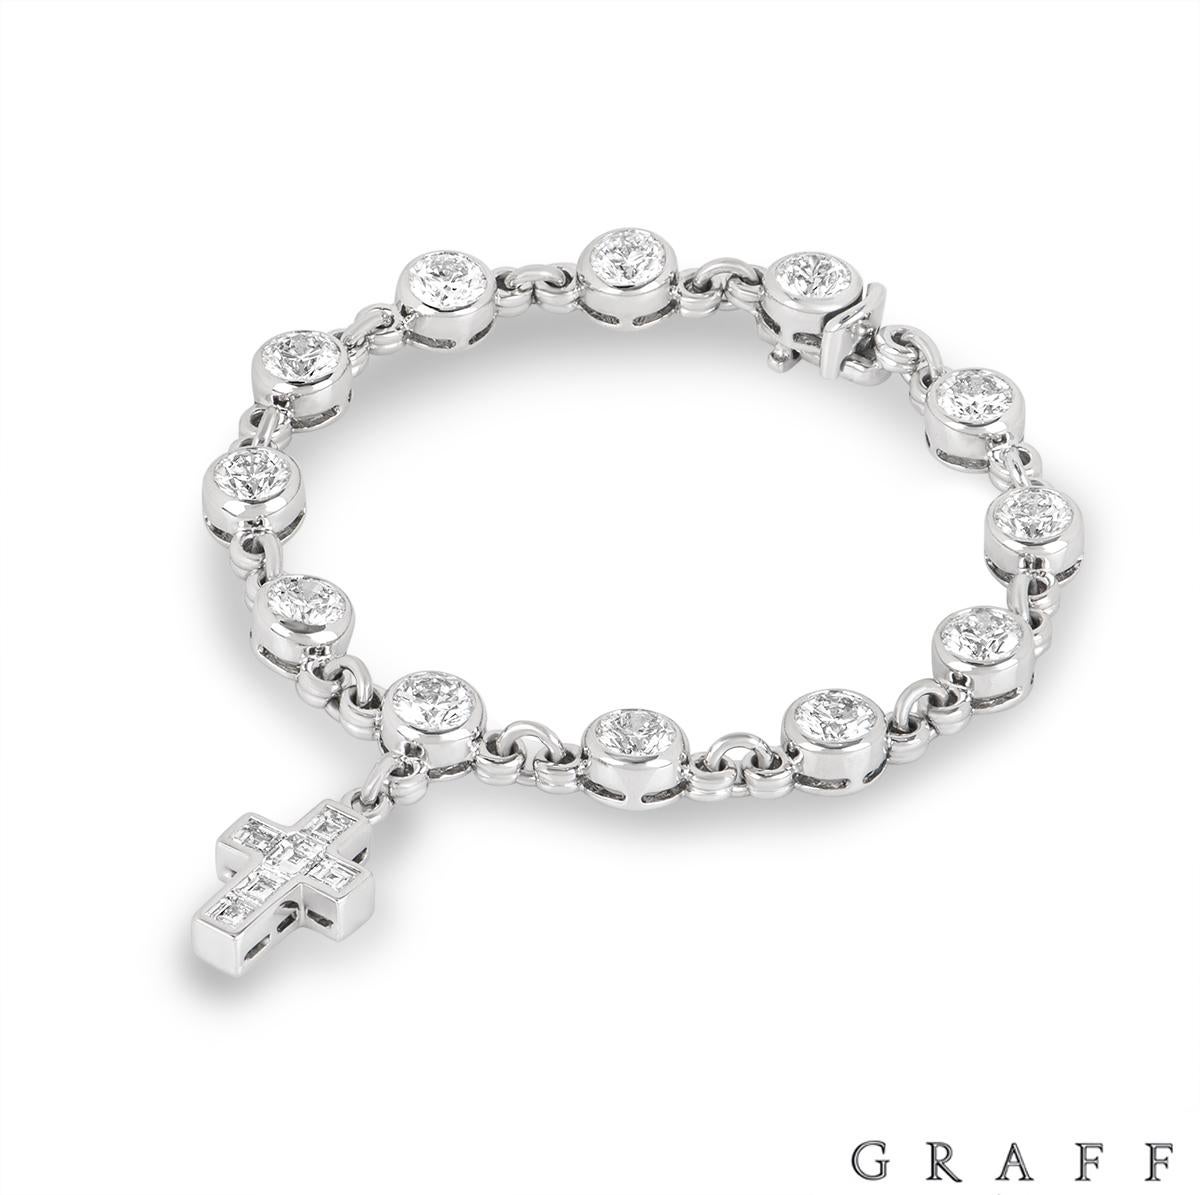 Un bracelet unique en or blanc 18 carats, orné de diamants, réalisé par Graff. Le bracelet présente 12 diamants ronds de taille brillante dans une monture sertie d'un chaton, régulièrement espacés sur l'ensemble du bracelet. Les diamants ont un